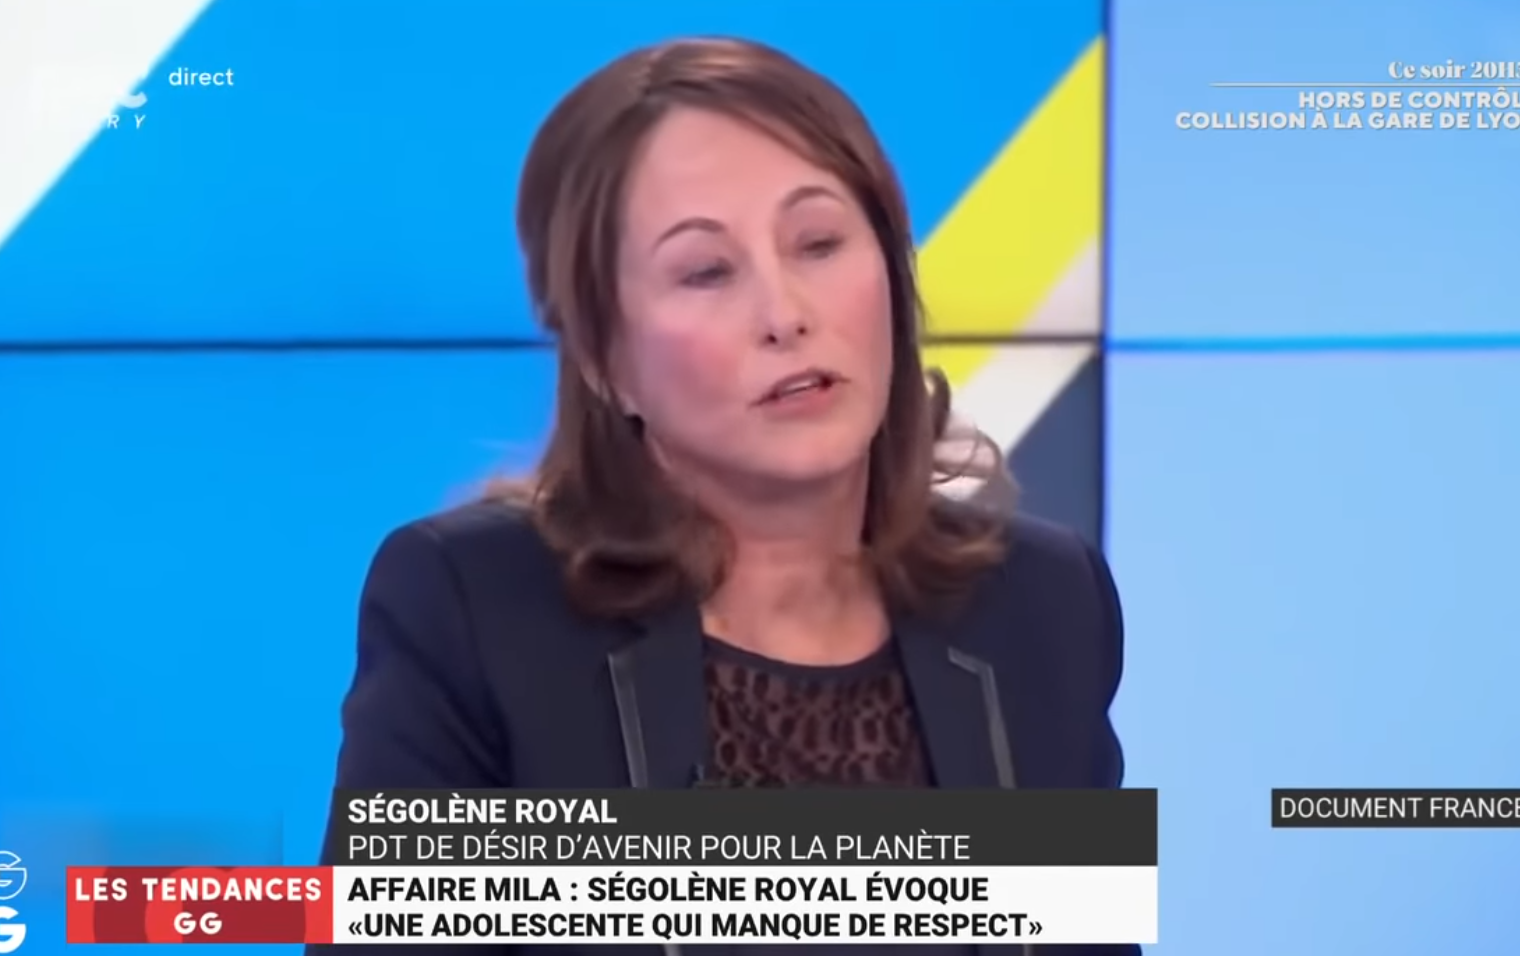 Affaire Mila : Ségolène Royal évoque “une adolescente qui manque de respect” (VIDÉO)